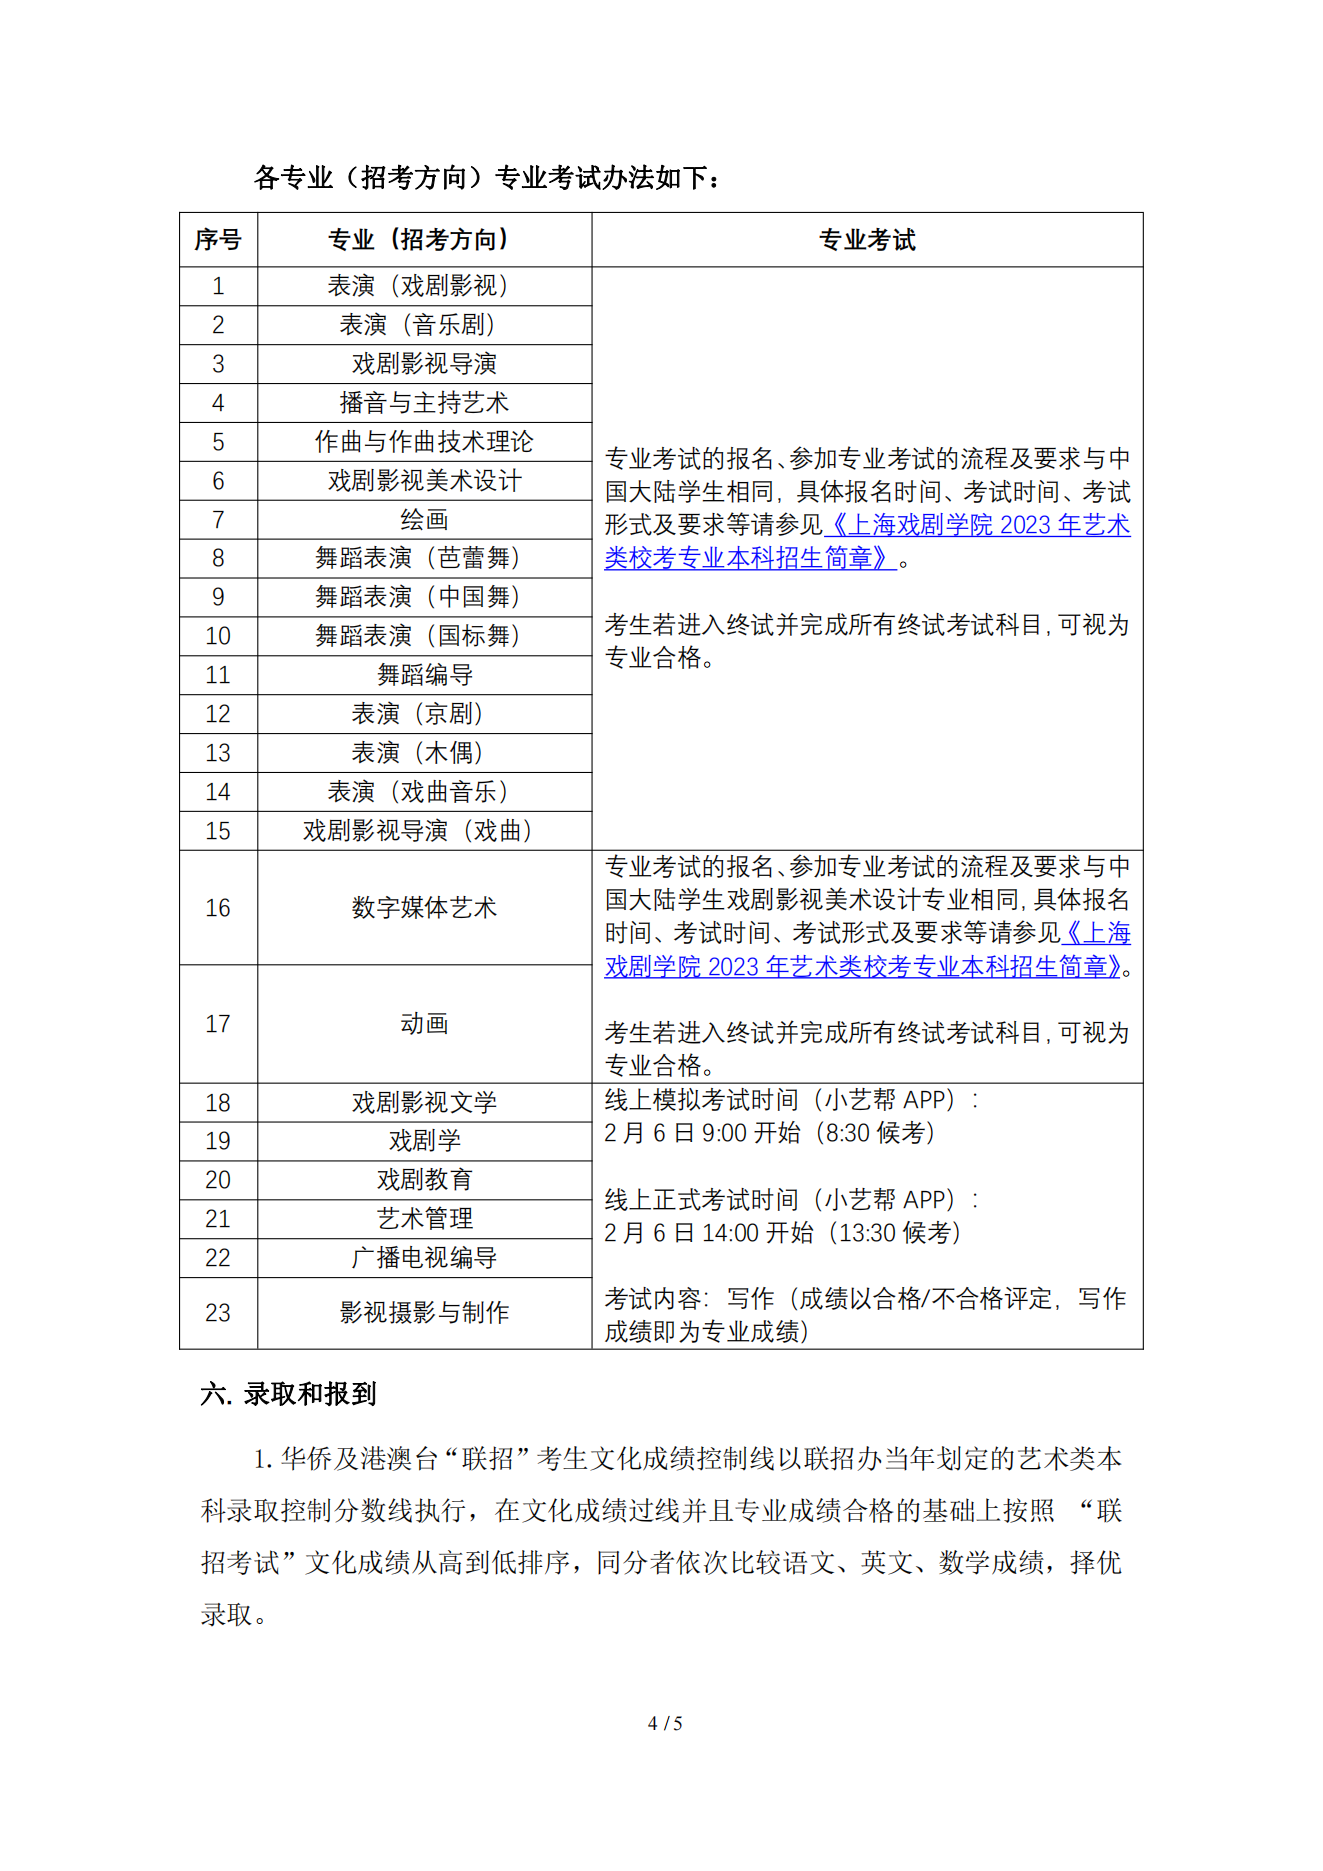 上海戏剧学院2023年华侨及港澳台学生本科招生简章